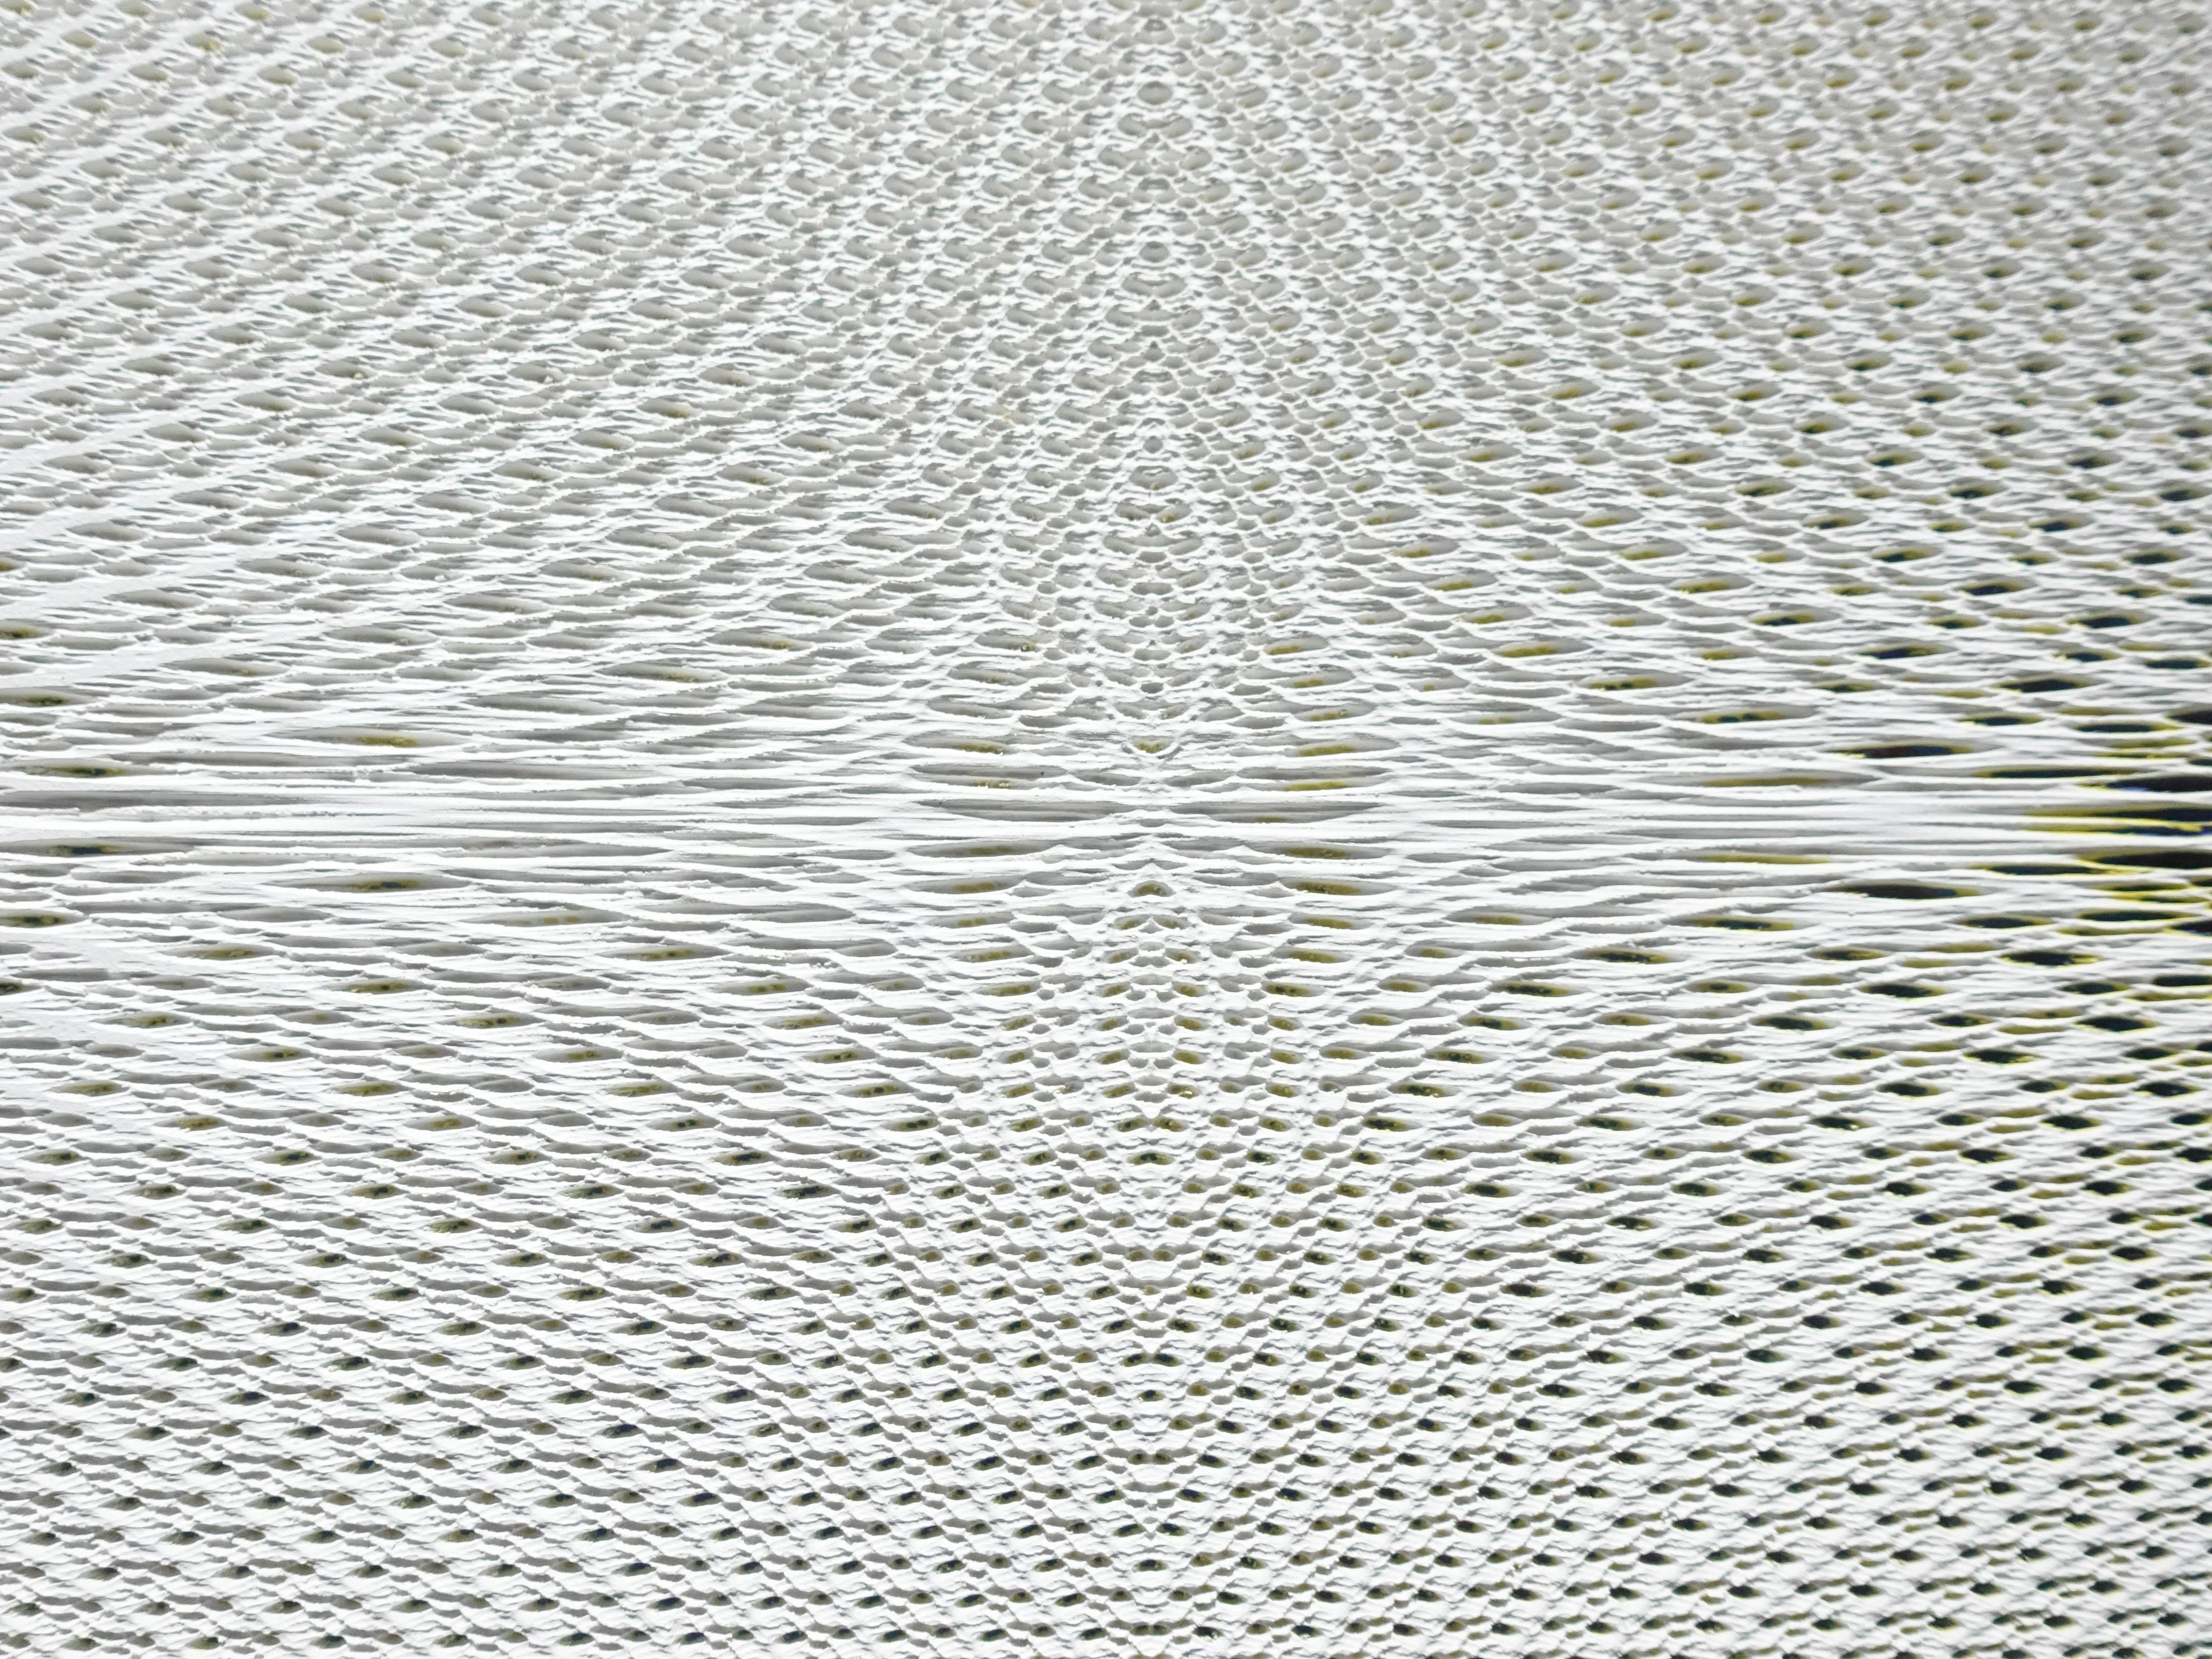 歐勁，《無題-154》細節，30 x 31 cm，木板、丙烯、綜合材料，2019。